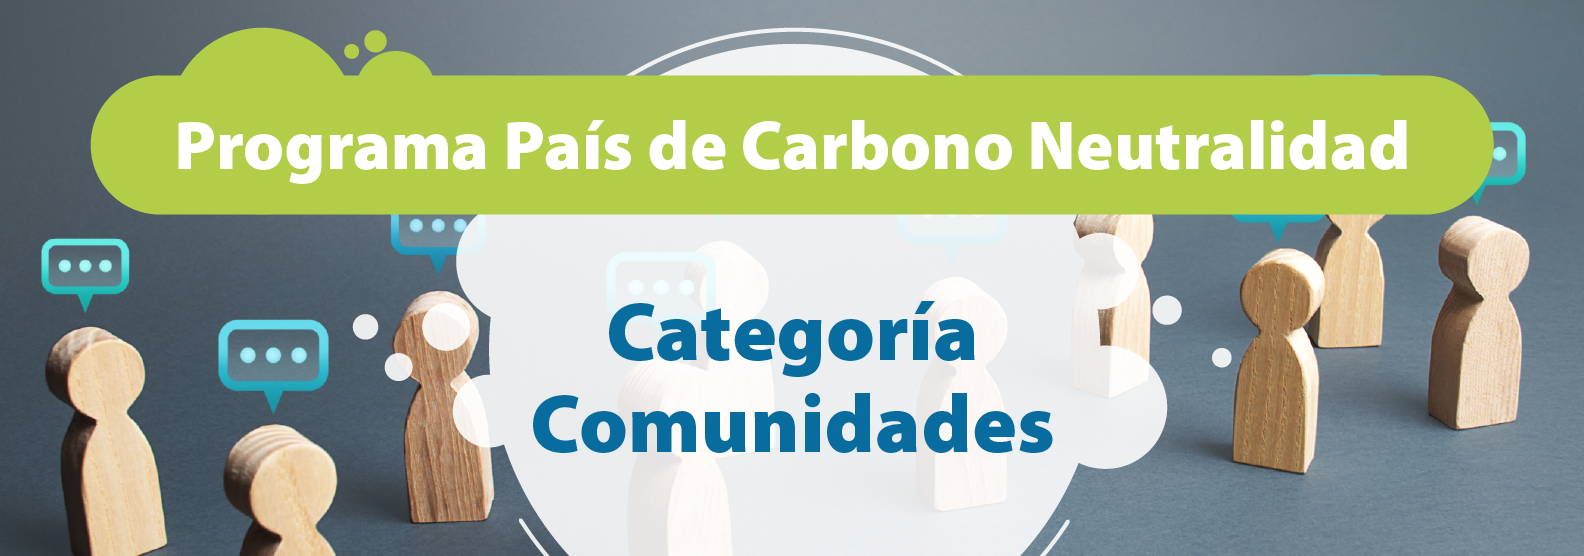 Programa País de Carbono Neutralidad, Categoría Comunidades